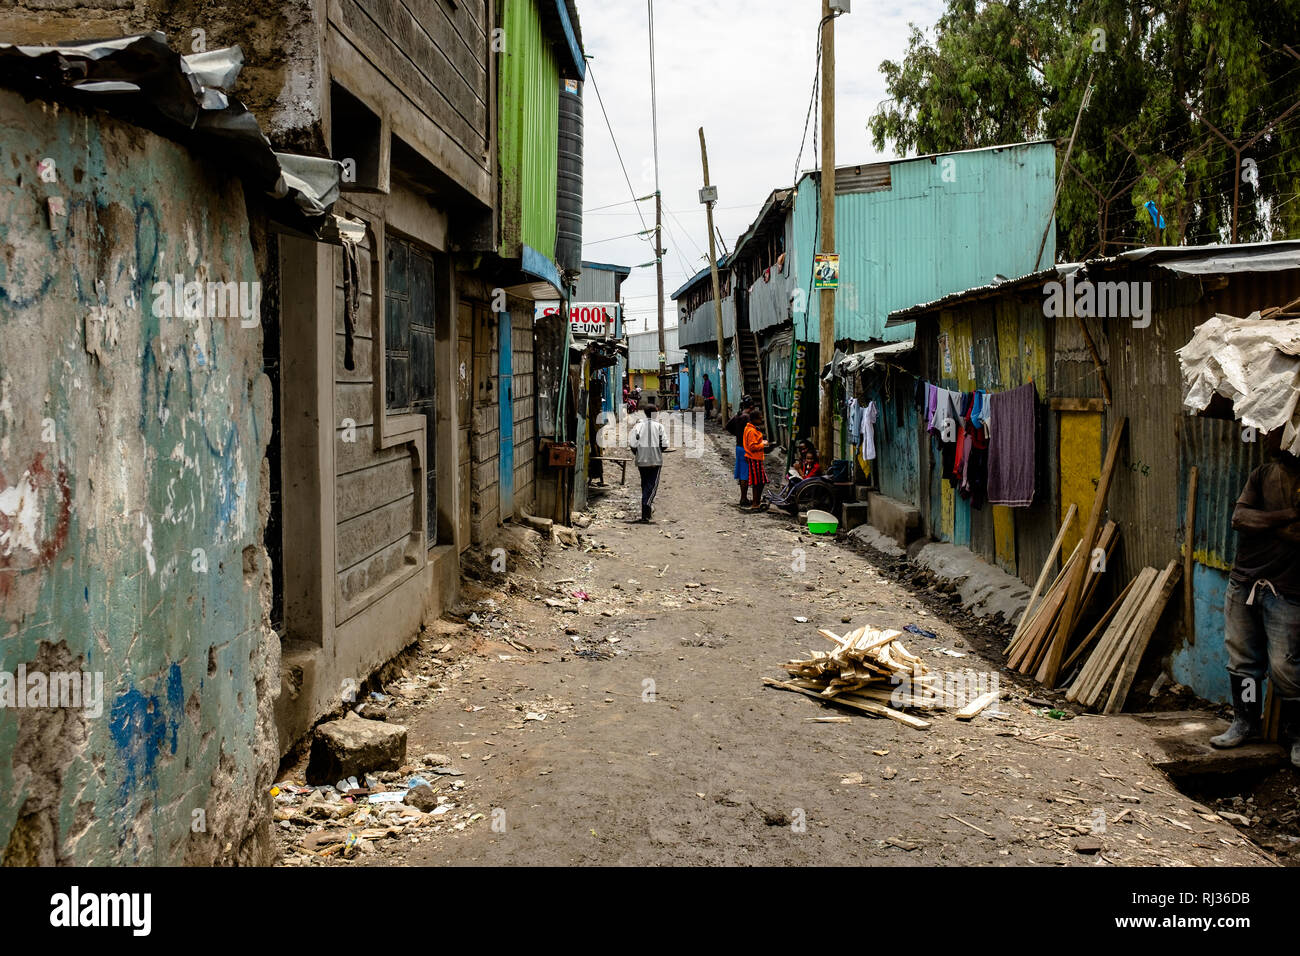 La pauvreté urbaine en Afrique : les gens marcher dans une rue boueuse le long de maisons d'étain dans le Sinaï bidonville de Nairobi, Kenya Banque D'Images